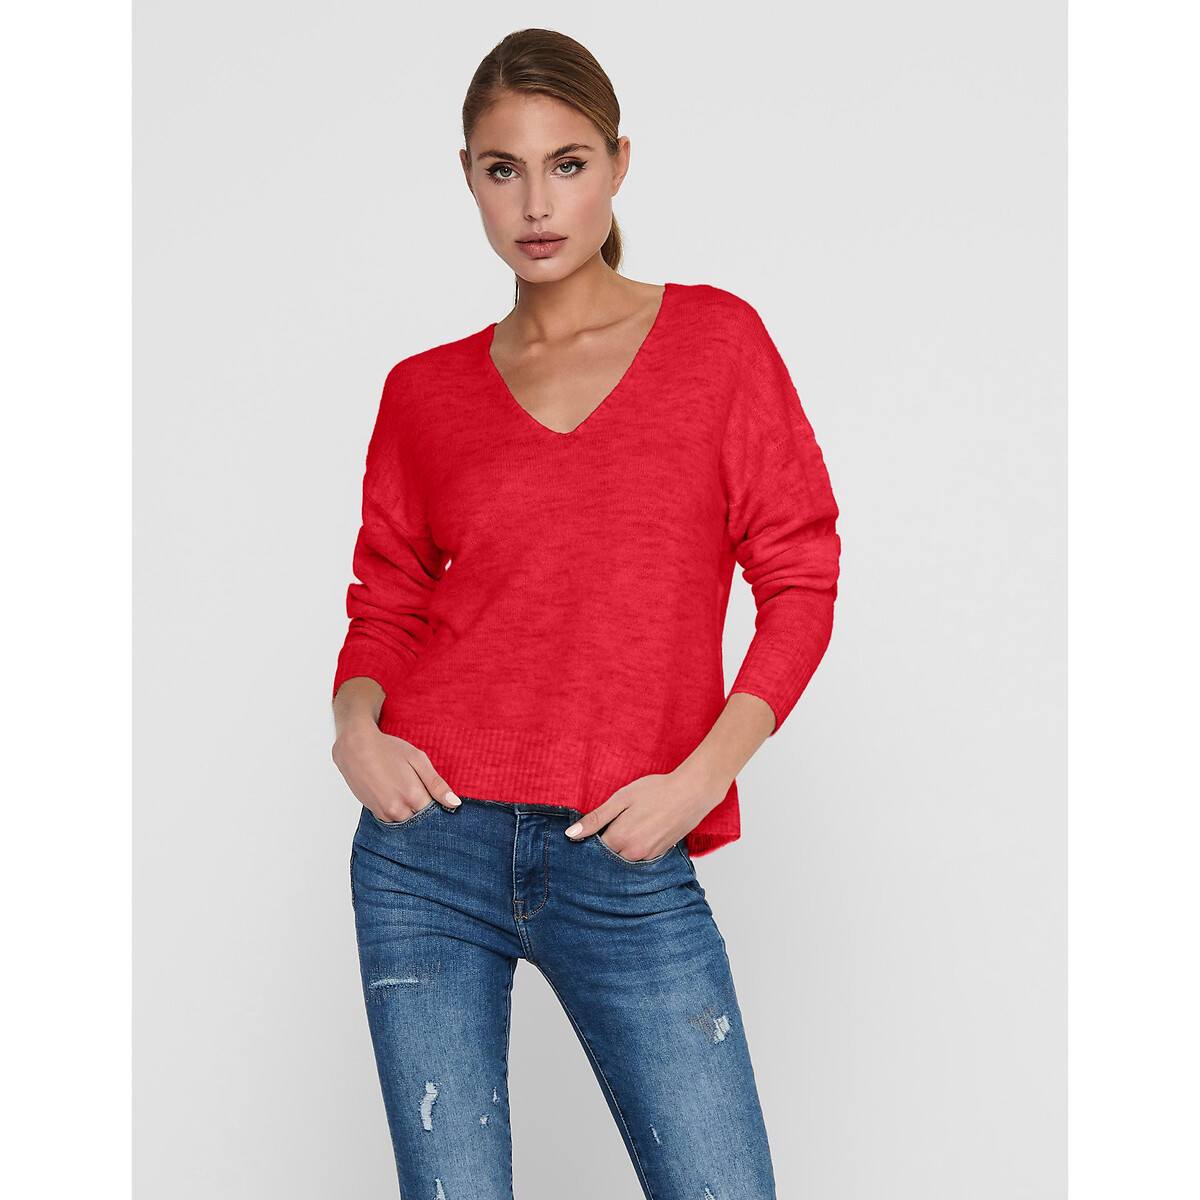 Пуловер С V-образным вырезом из пышного трикотажа S красный LaRedoute, размер S - фото 1